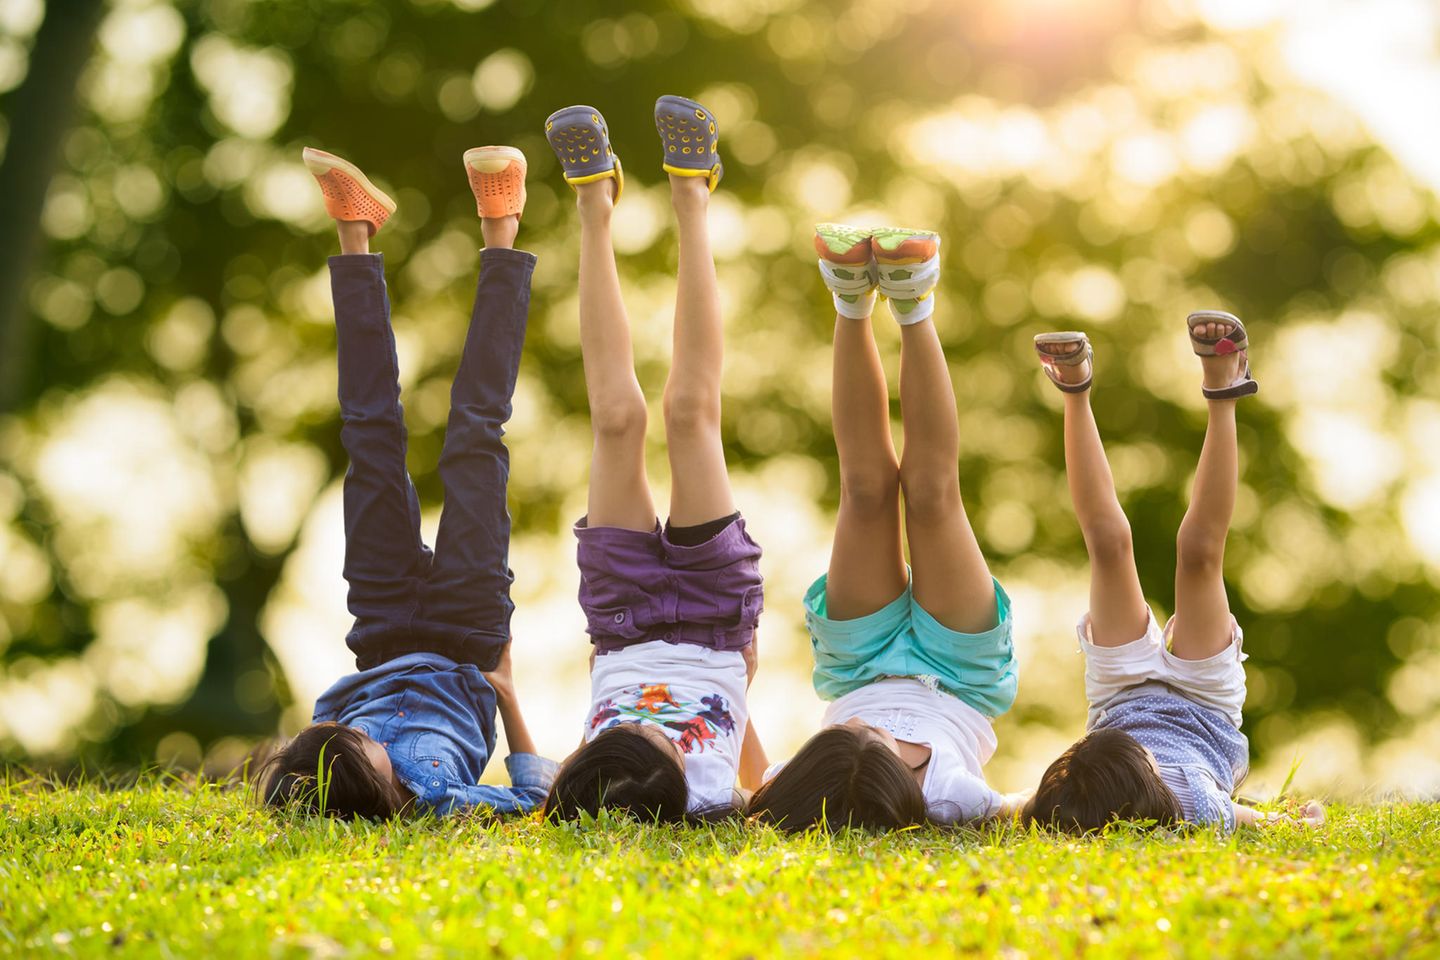 Wahrnehmung: 4 Kinder liegen nebeneinander auf dem Rasen und strecken die Beine in die Luft